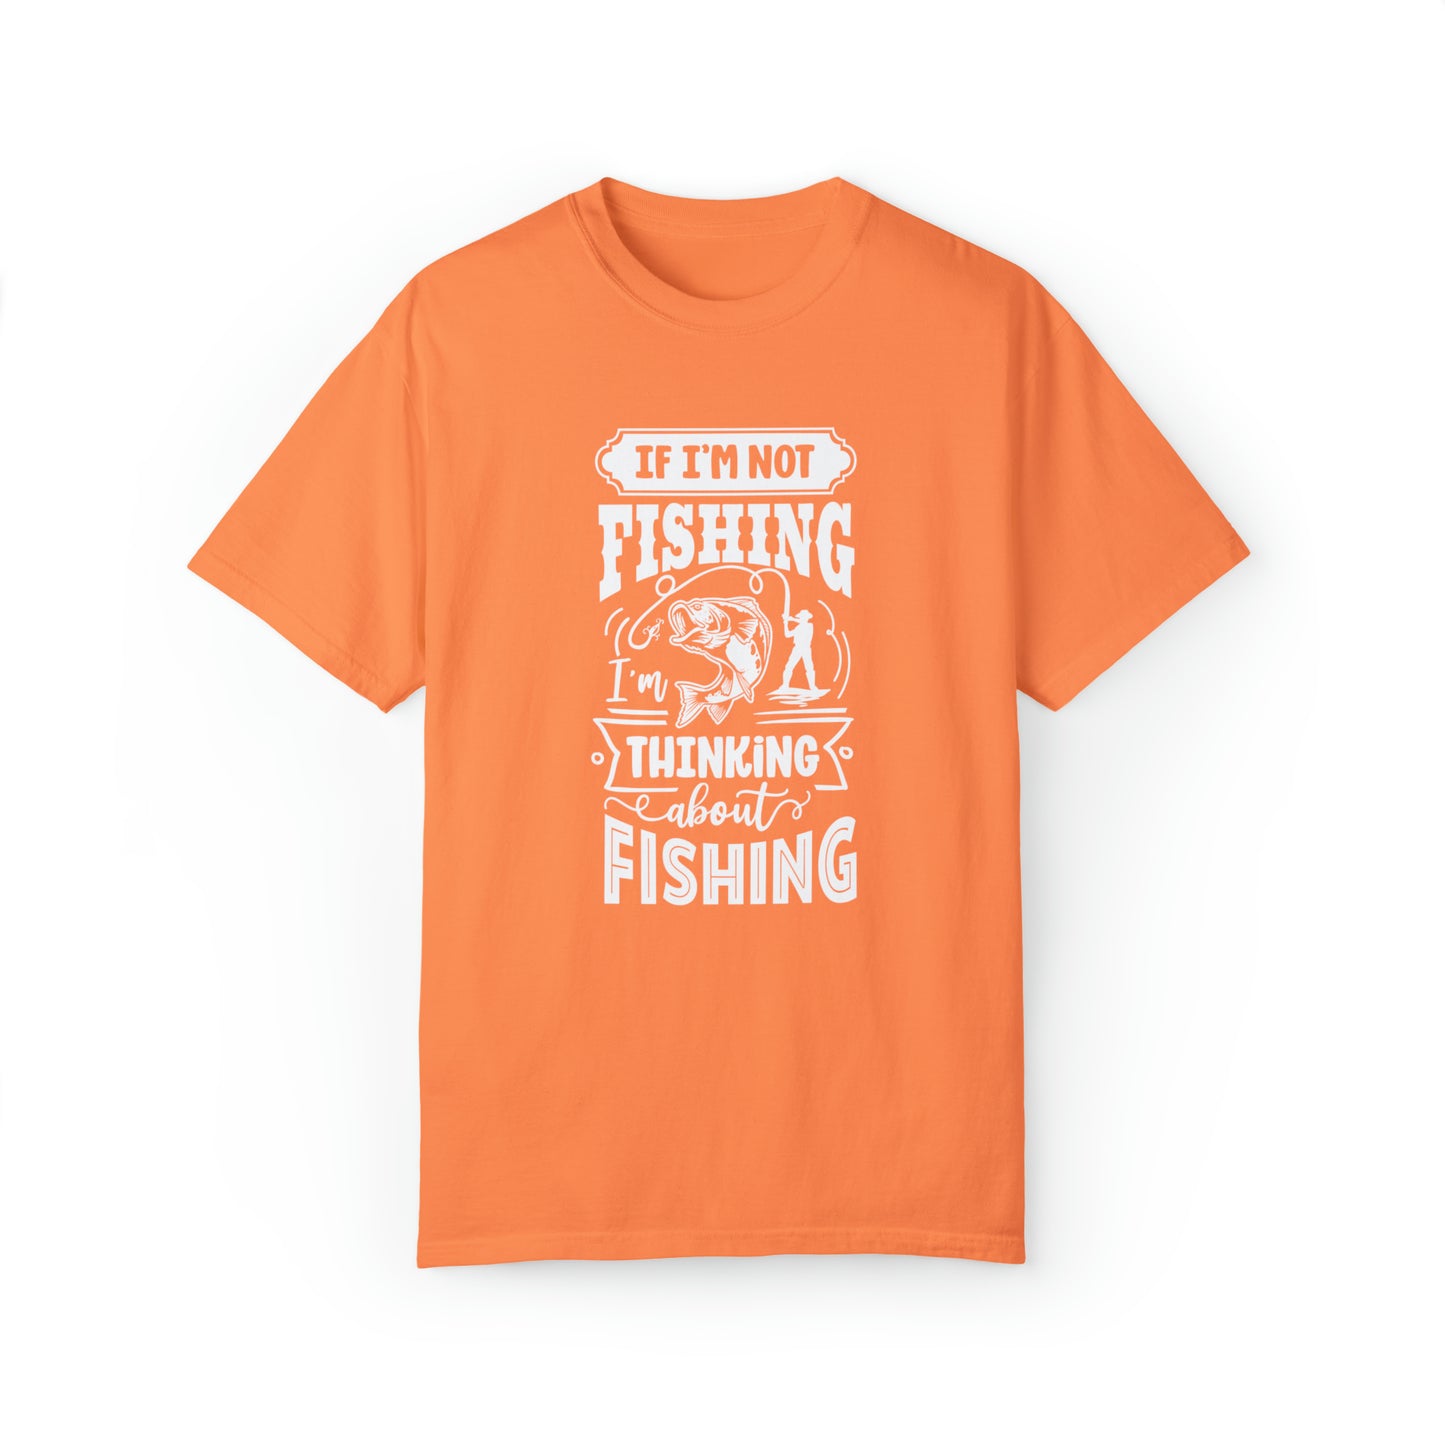 すべてのキャストを思い描く: 「釣りをしていないなら、釣りのことを考えています」 T シャツ